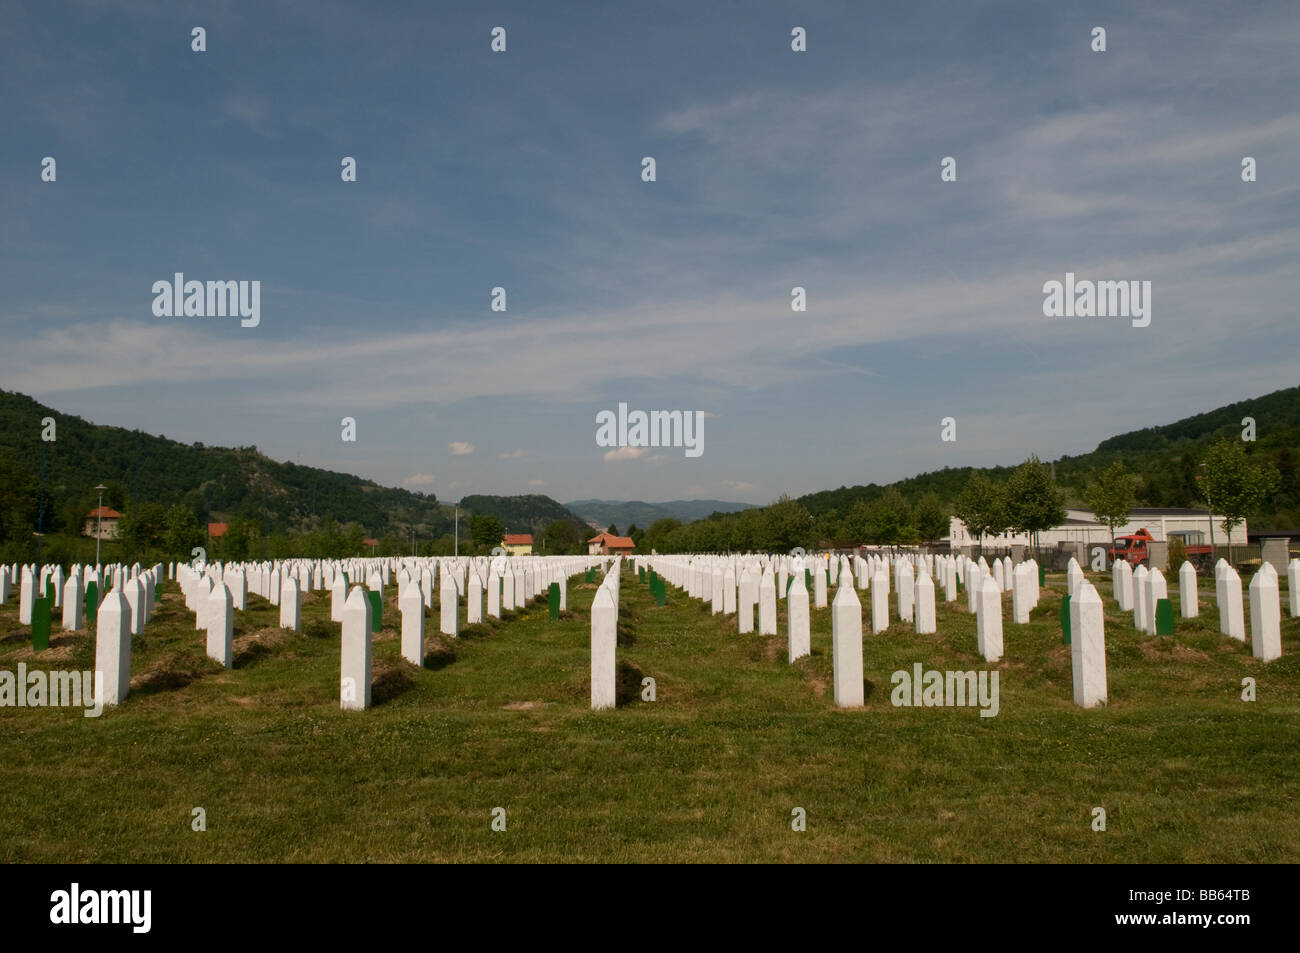 Grabsteine, die am Srebrenica Potocari Genozid-Denkmal und aufgestellt wurden Friedhof für über 3000 Opfer des Völkermordes von 1995 in Bosnien und Herzegowina Stockfoto